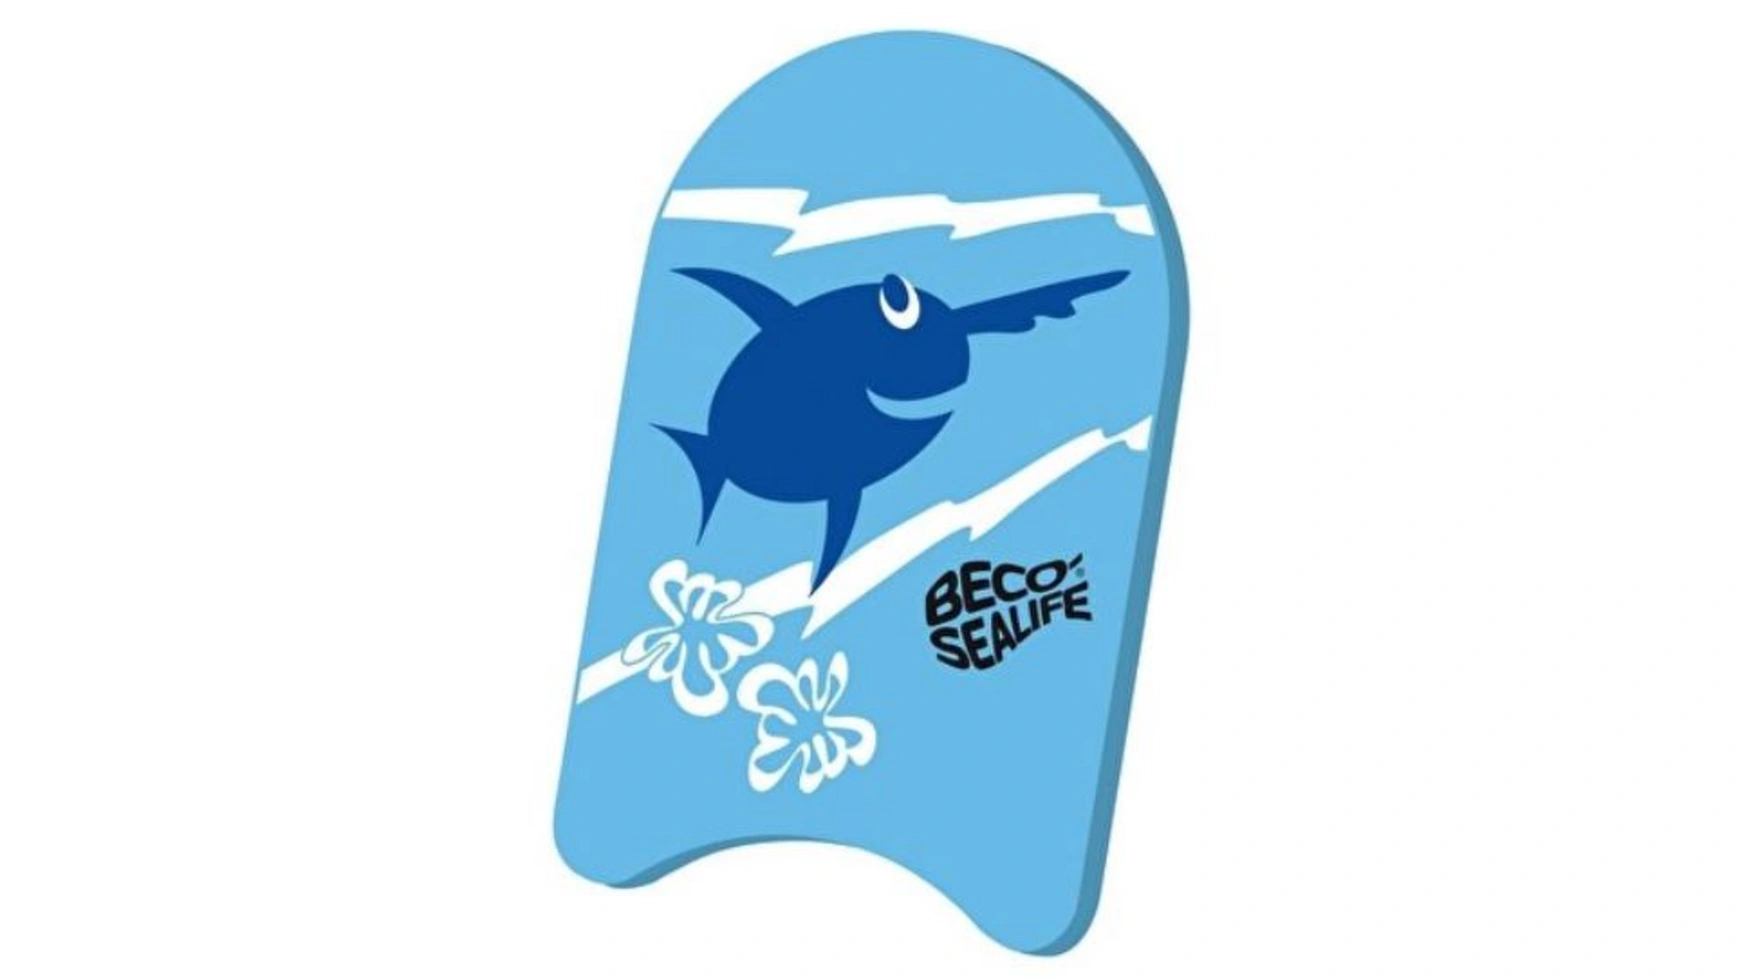 Beco Доска для плавания Sealife, синяя доска для плавания beco 9687 синий